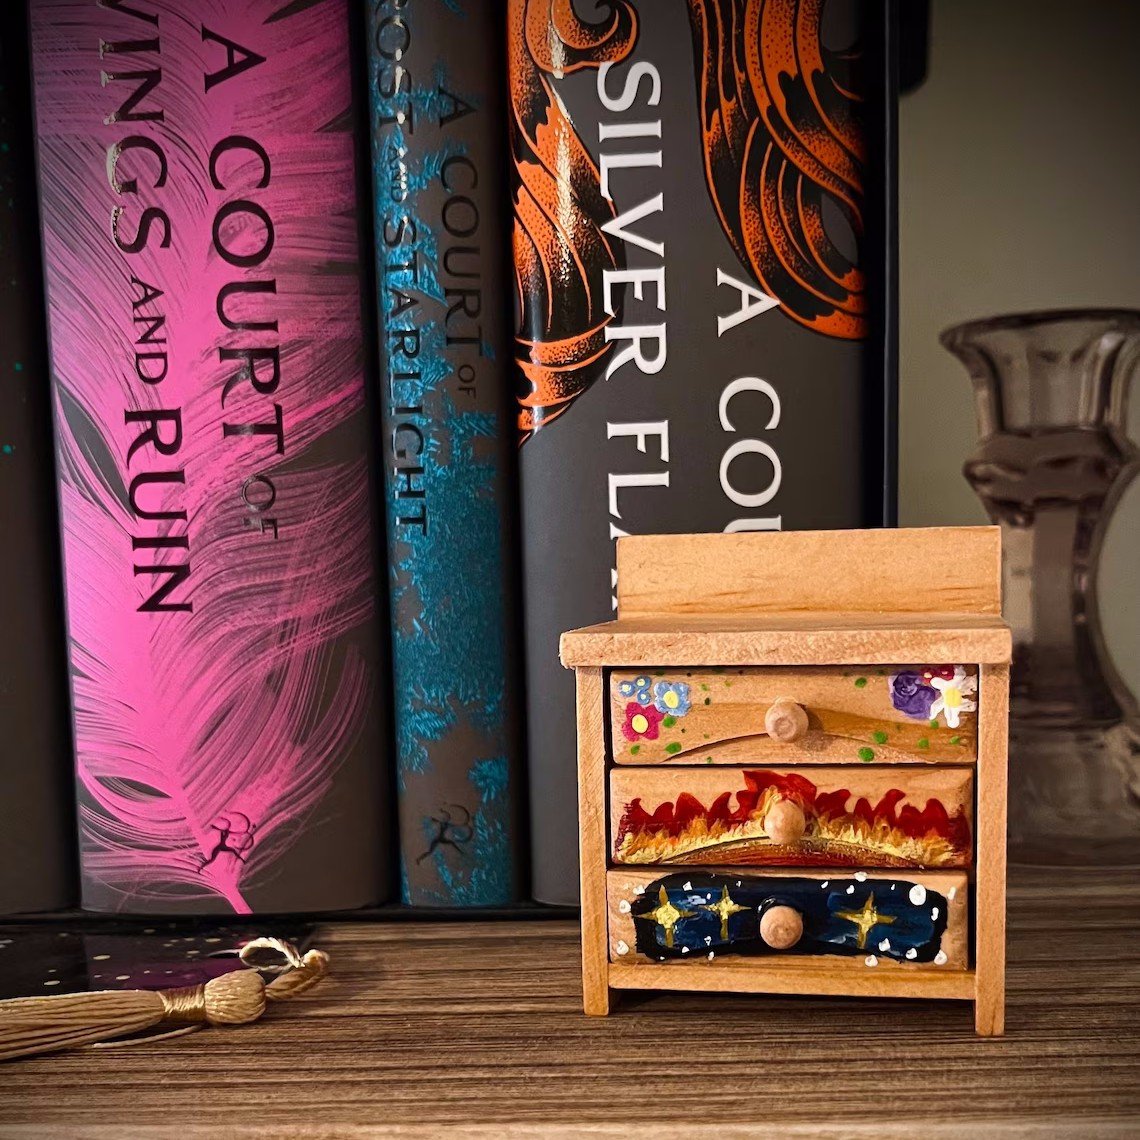 Acotar Inspired Mini Dresser Bookshelf Decor